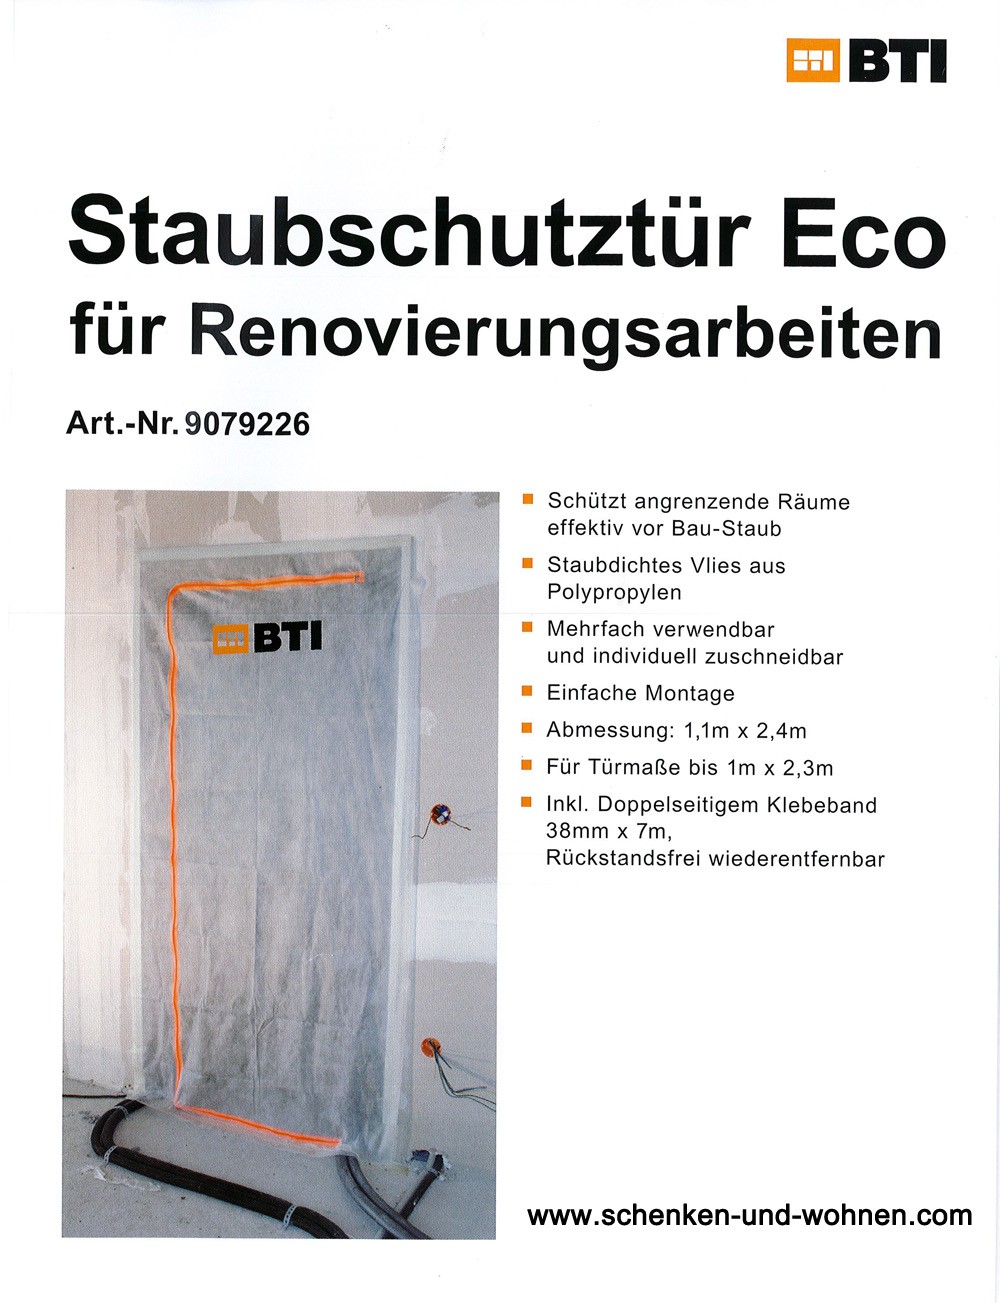 Staubschutztüre für Renovierungsarbeiten mit Reißverschluss